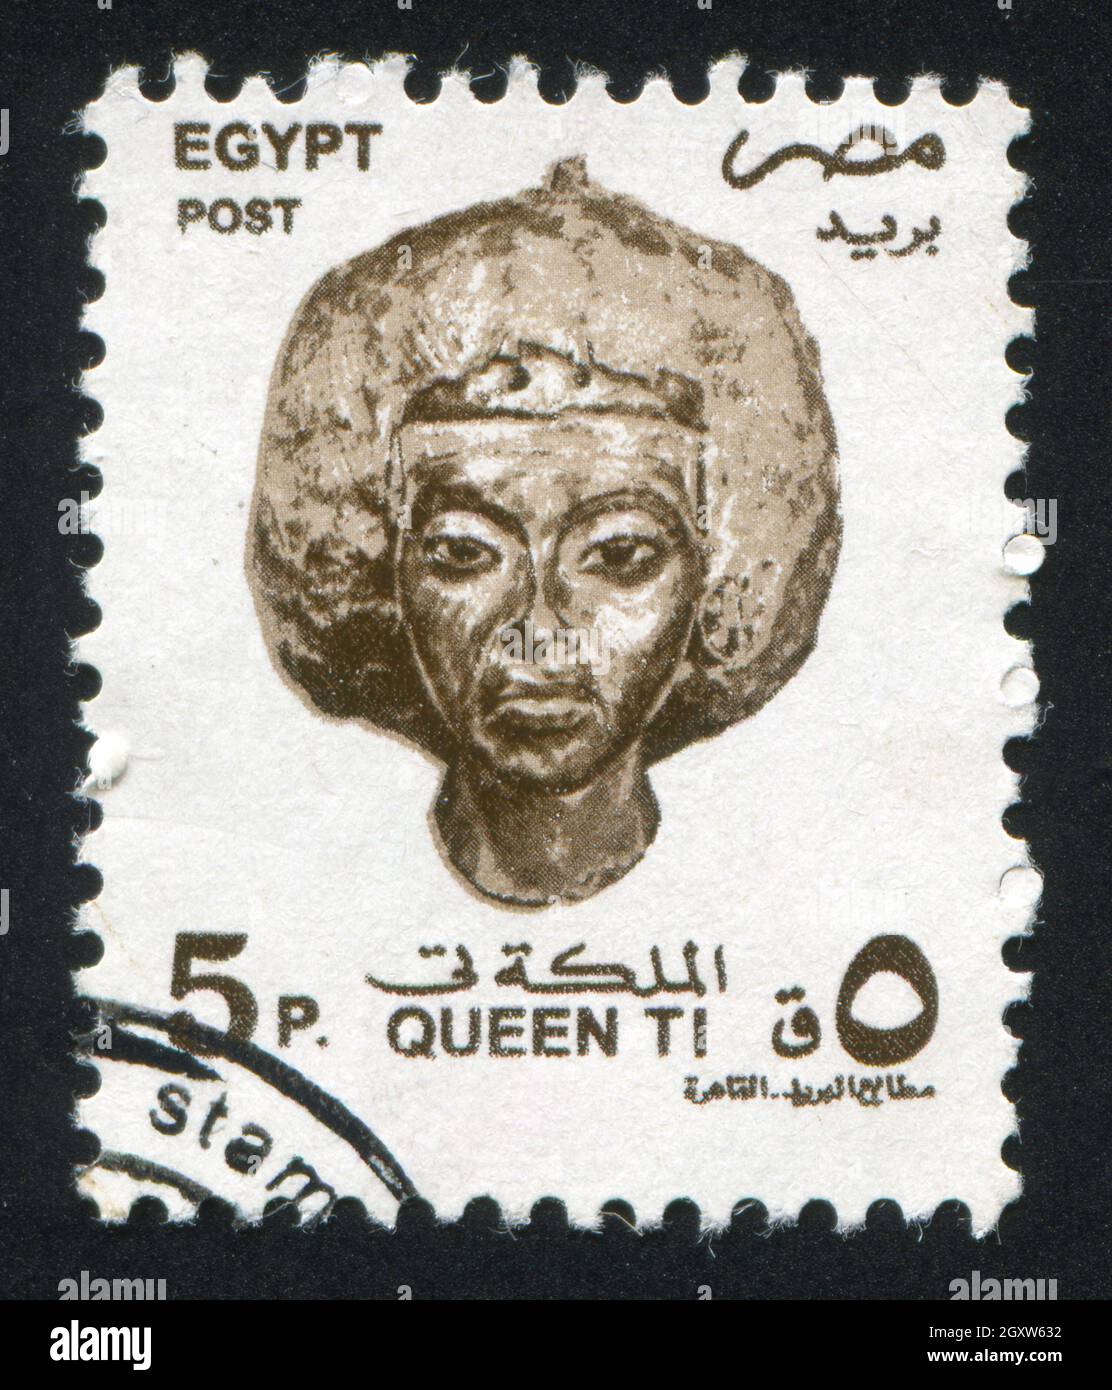 ÉGYPTE - VERS 1994 : timbre imprimé par l'Égypte, affiche le buste de la reine Tiye, vers 1994 Banque D'Images